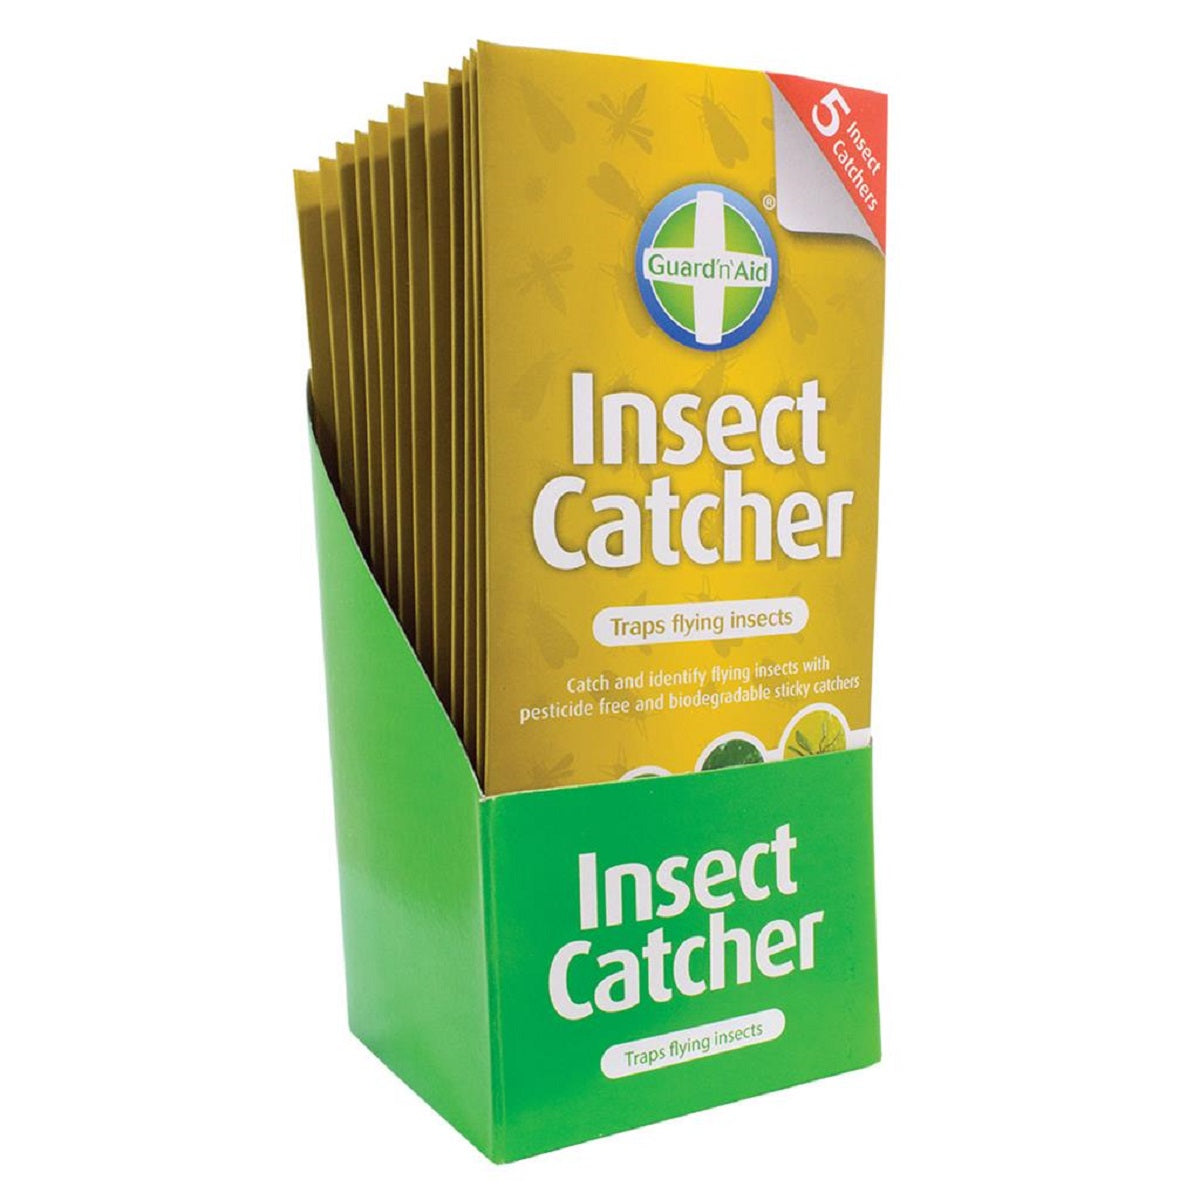 Guard'n'Aid Insect Catcher - Piège à glue jaune